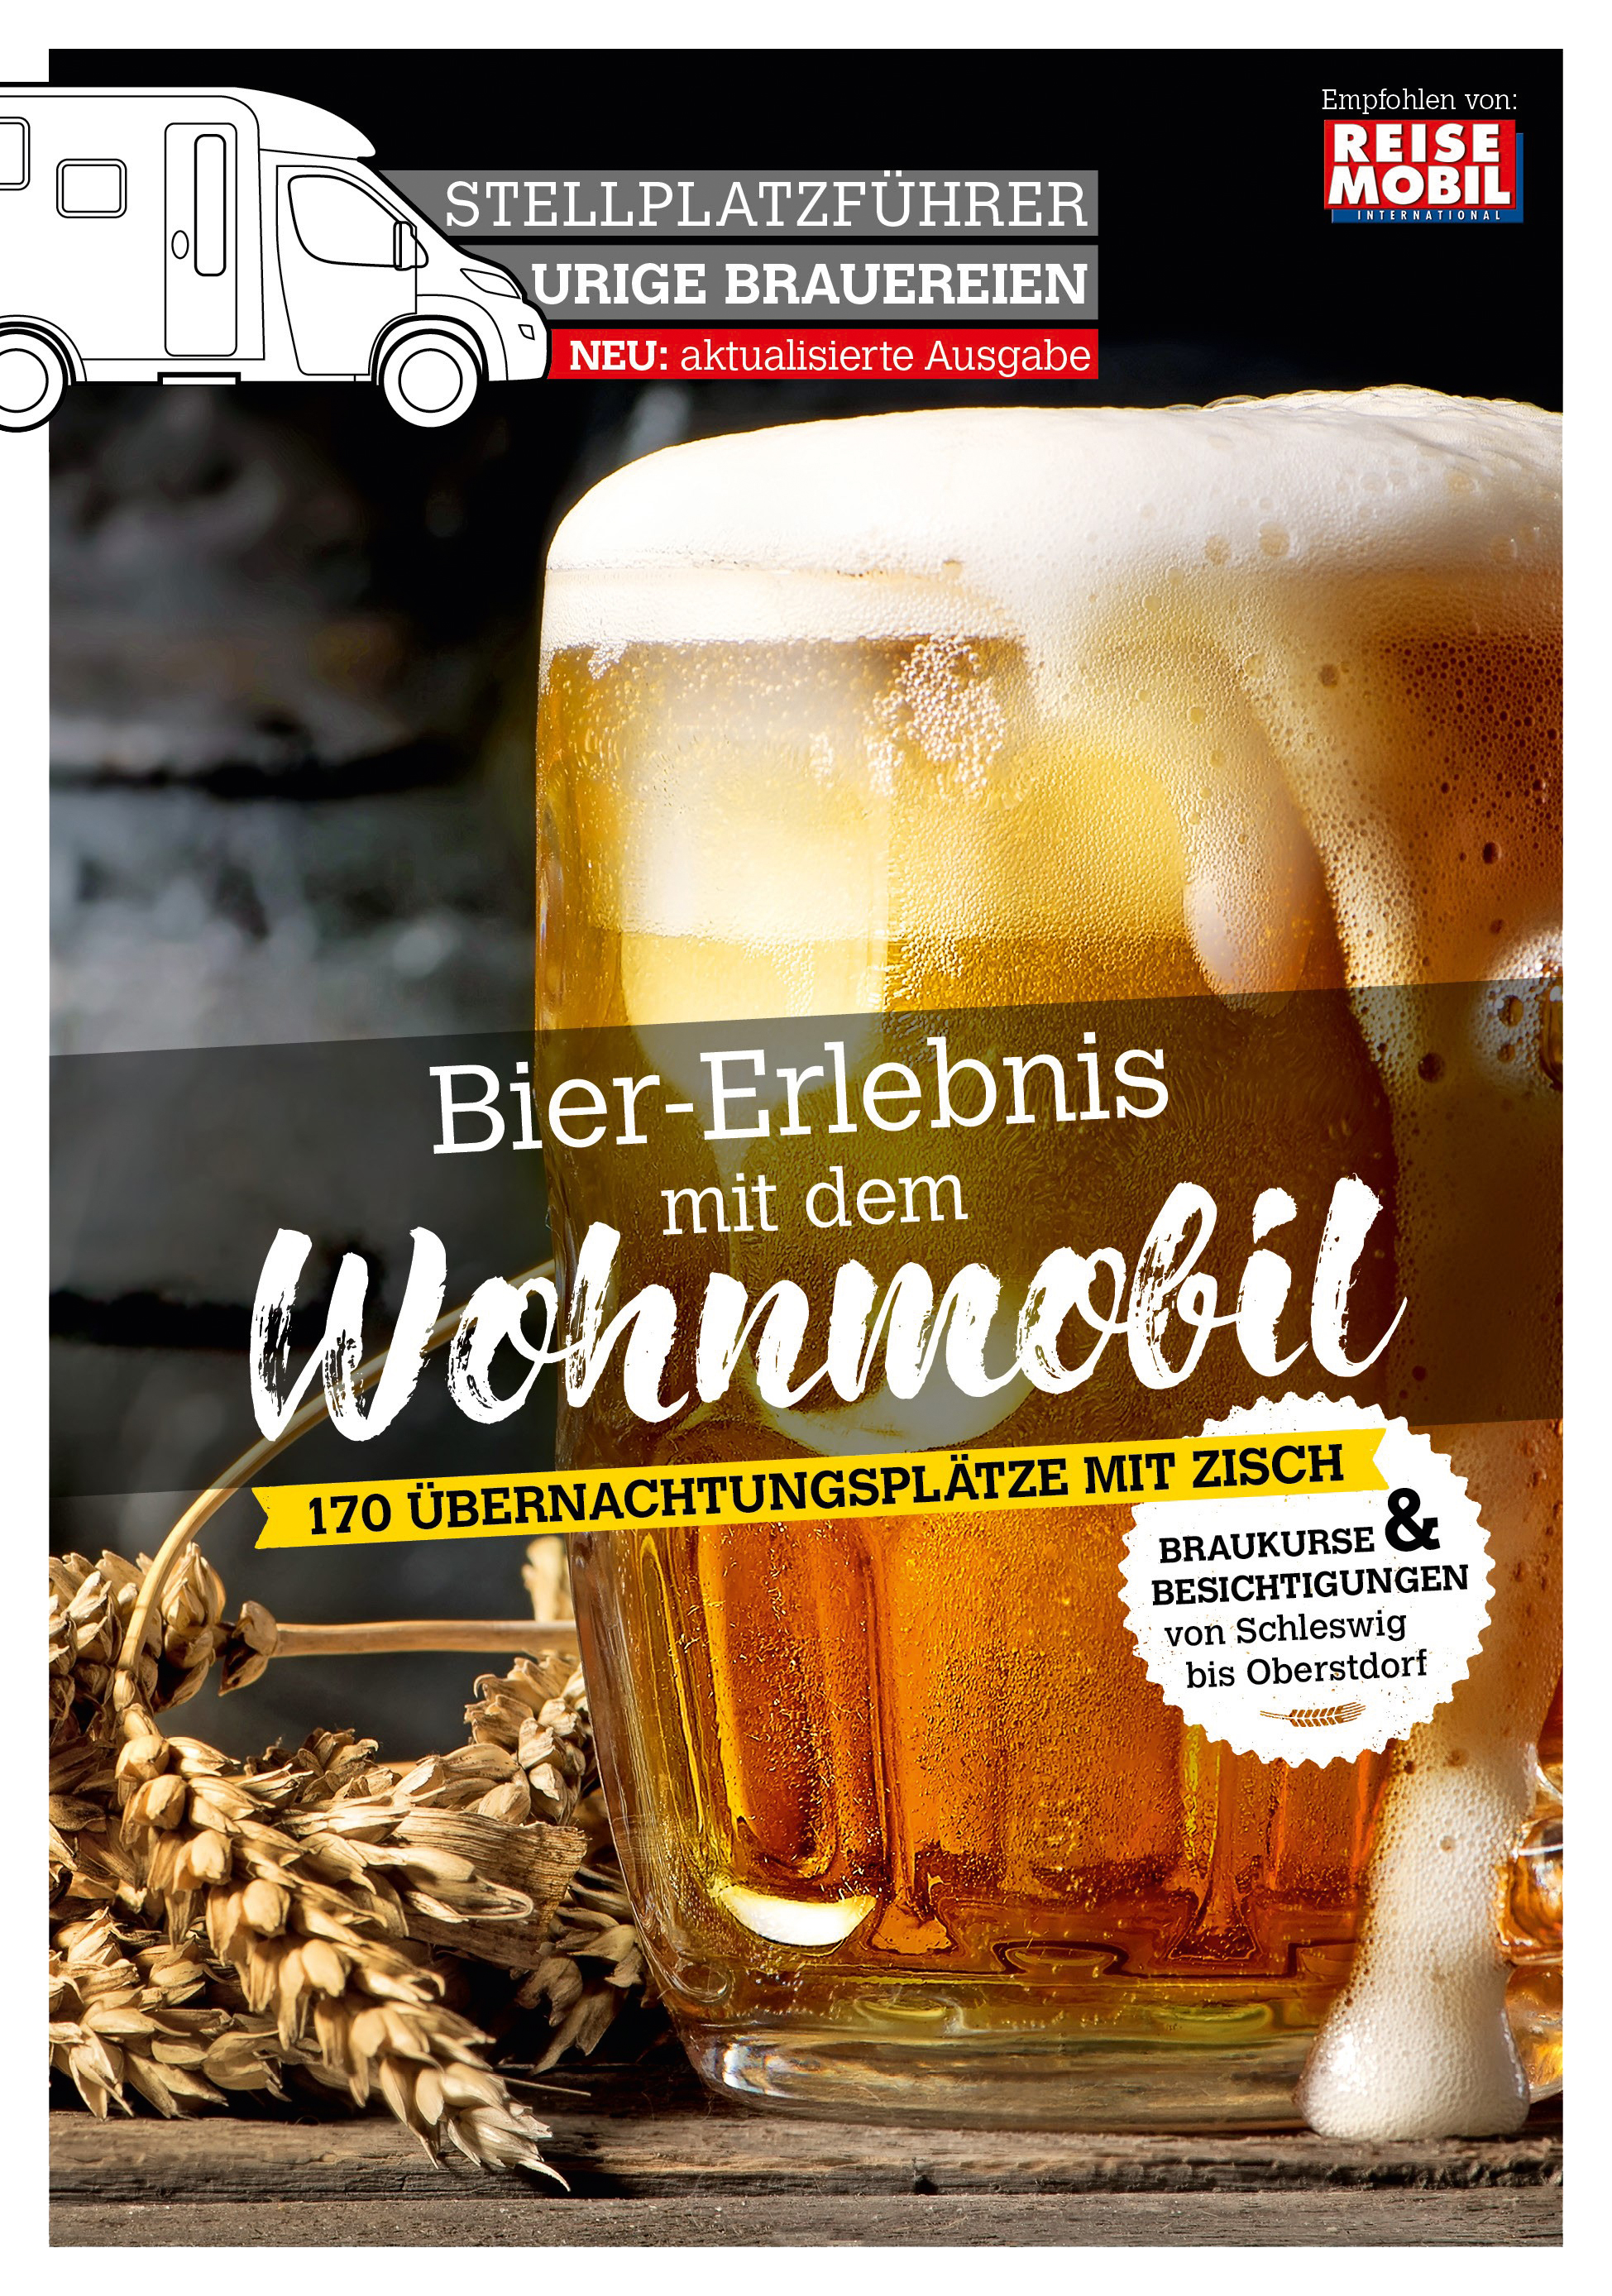 Stellplatzführer Urige Brauerein 2. Aufl